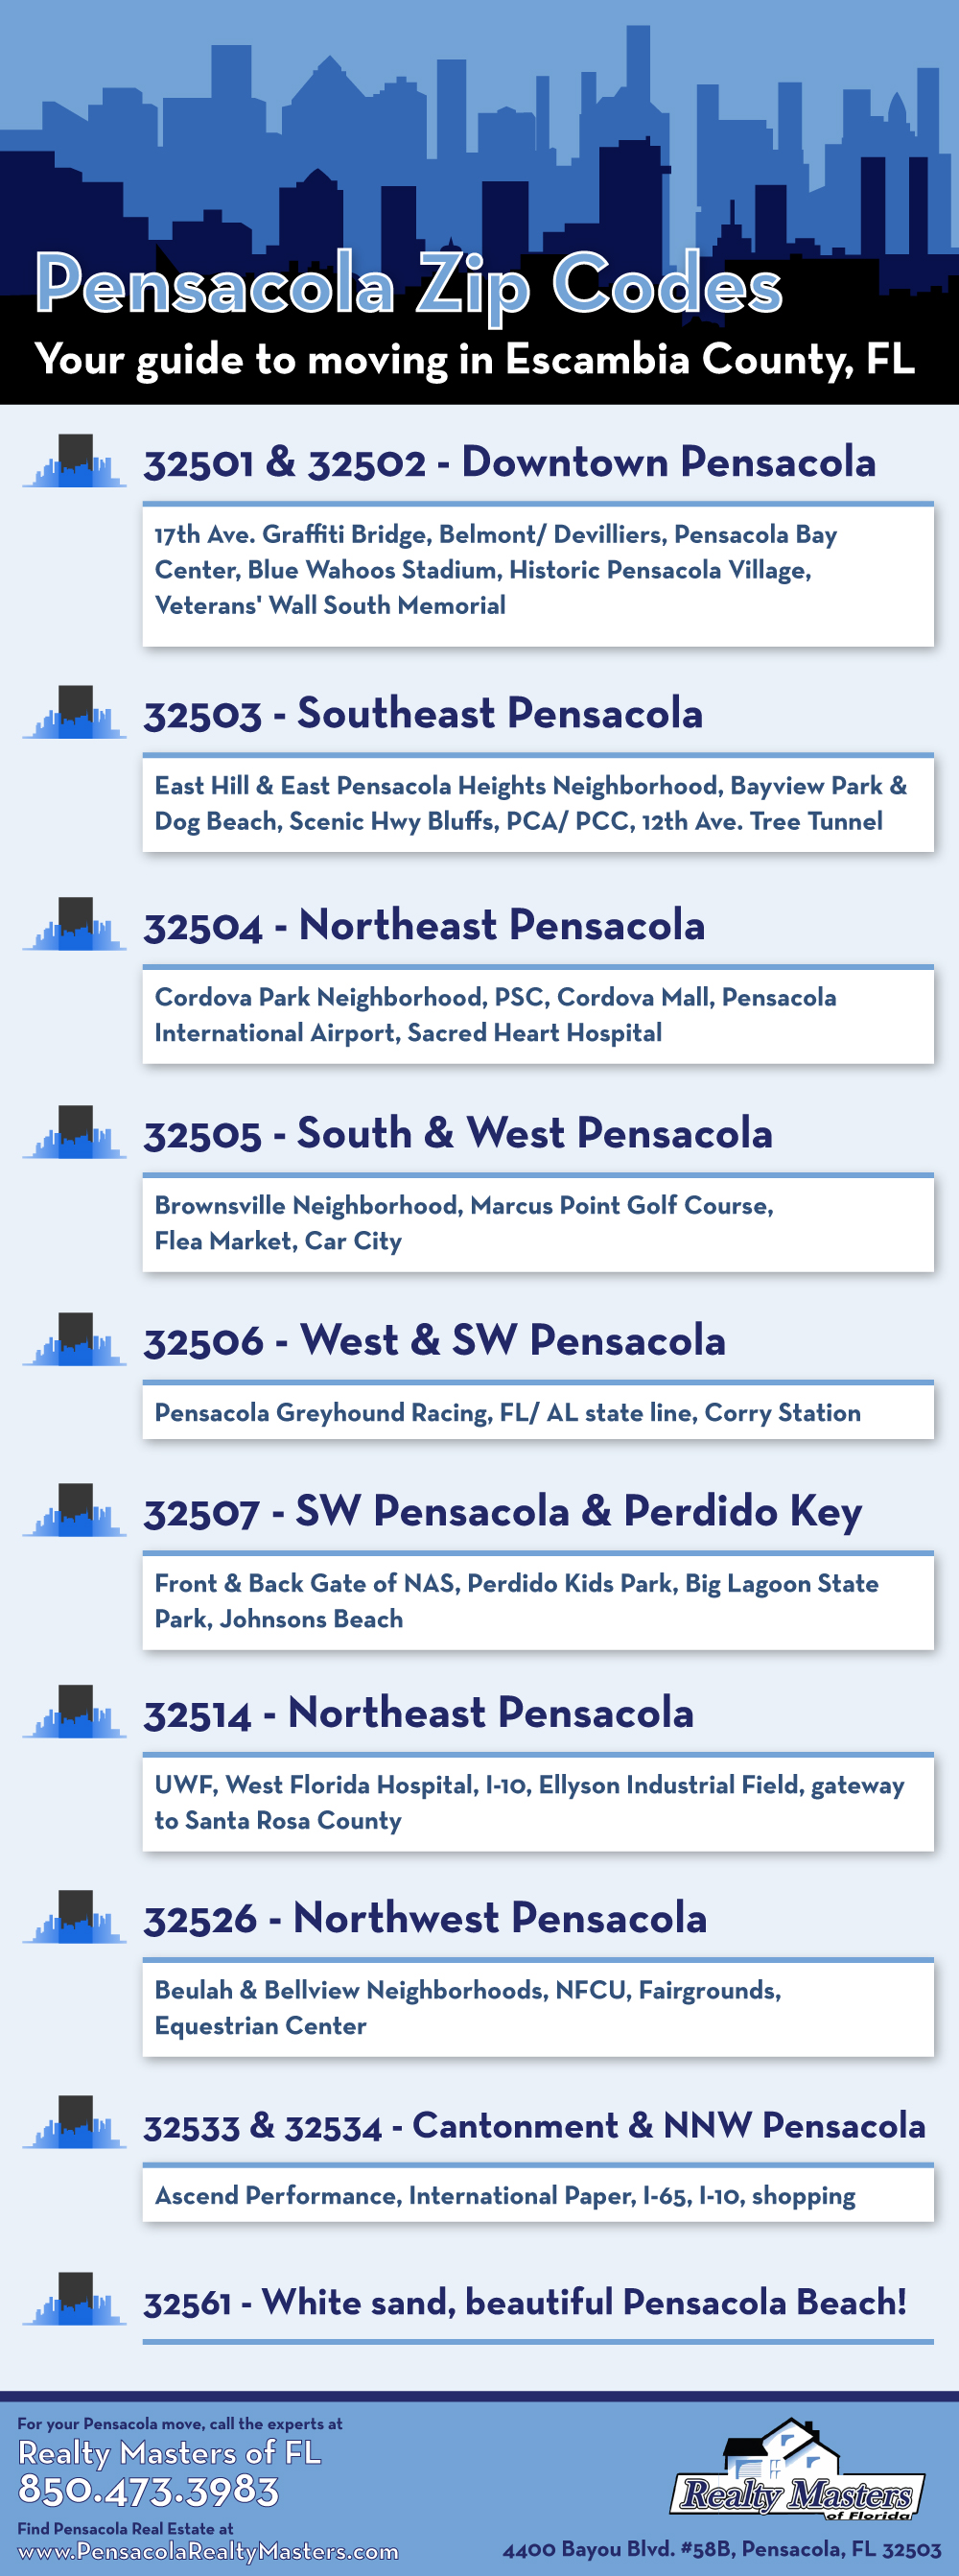 Pensacola Zip Codes